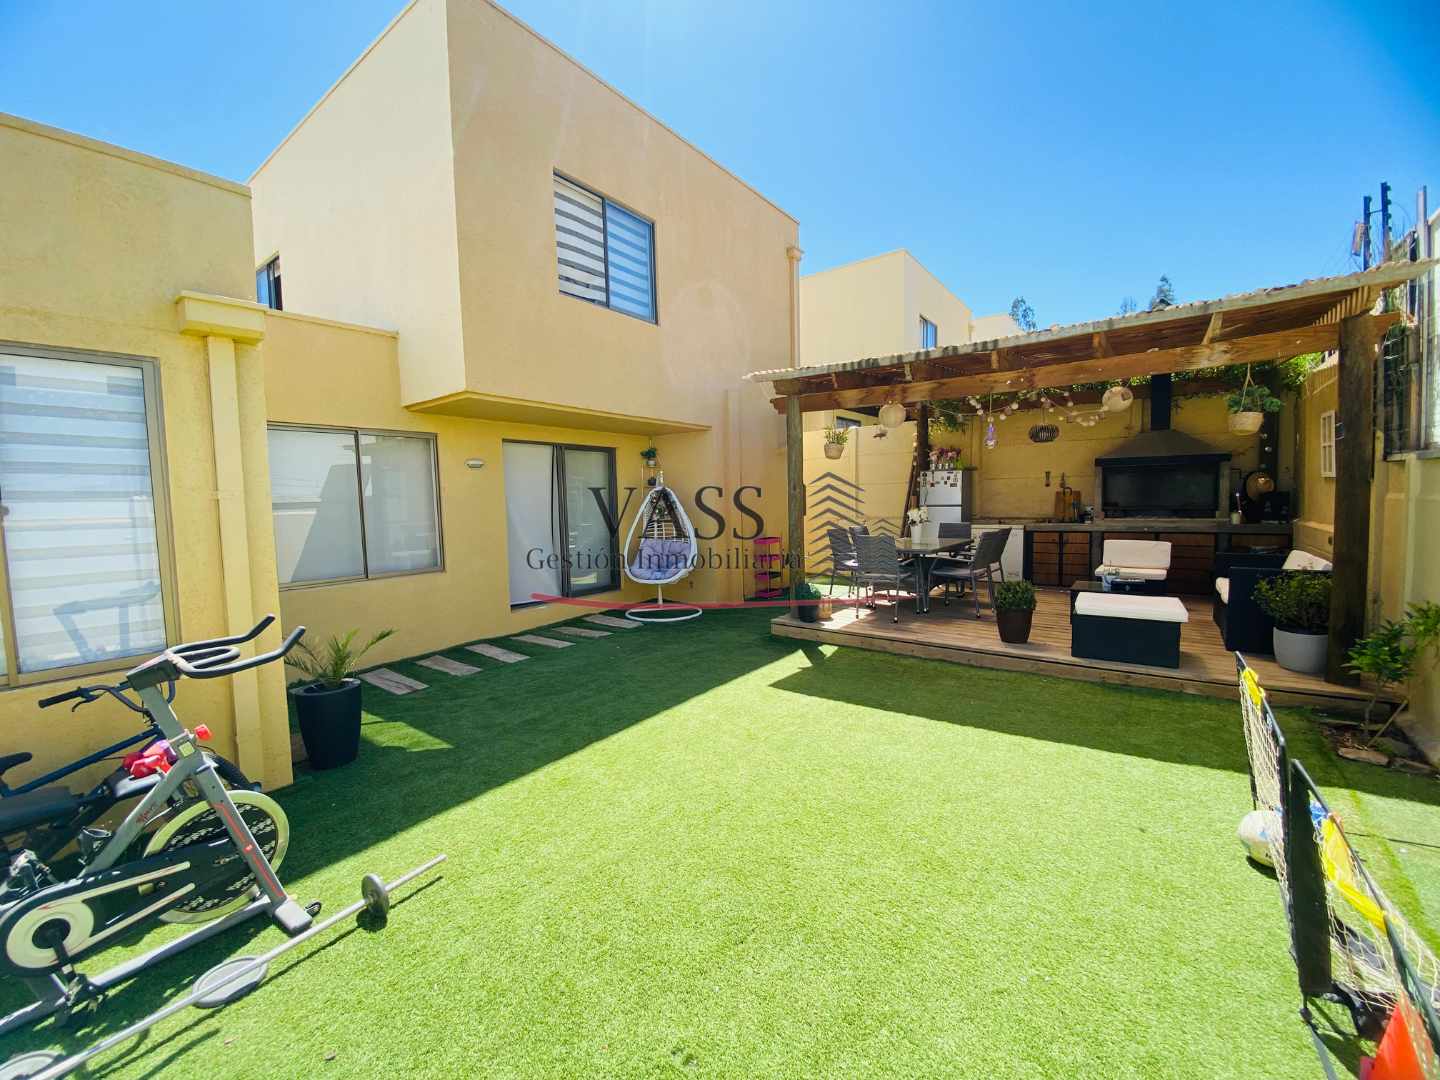 VASS Gestión Inmobiliaria vende casa 5D 3B en exclusivo condominio de Villa Alemana